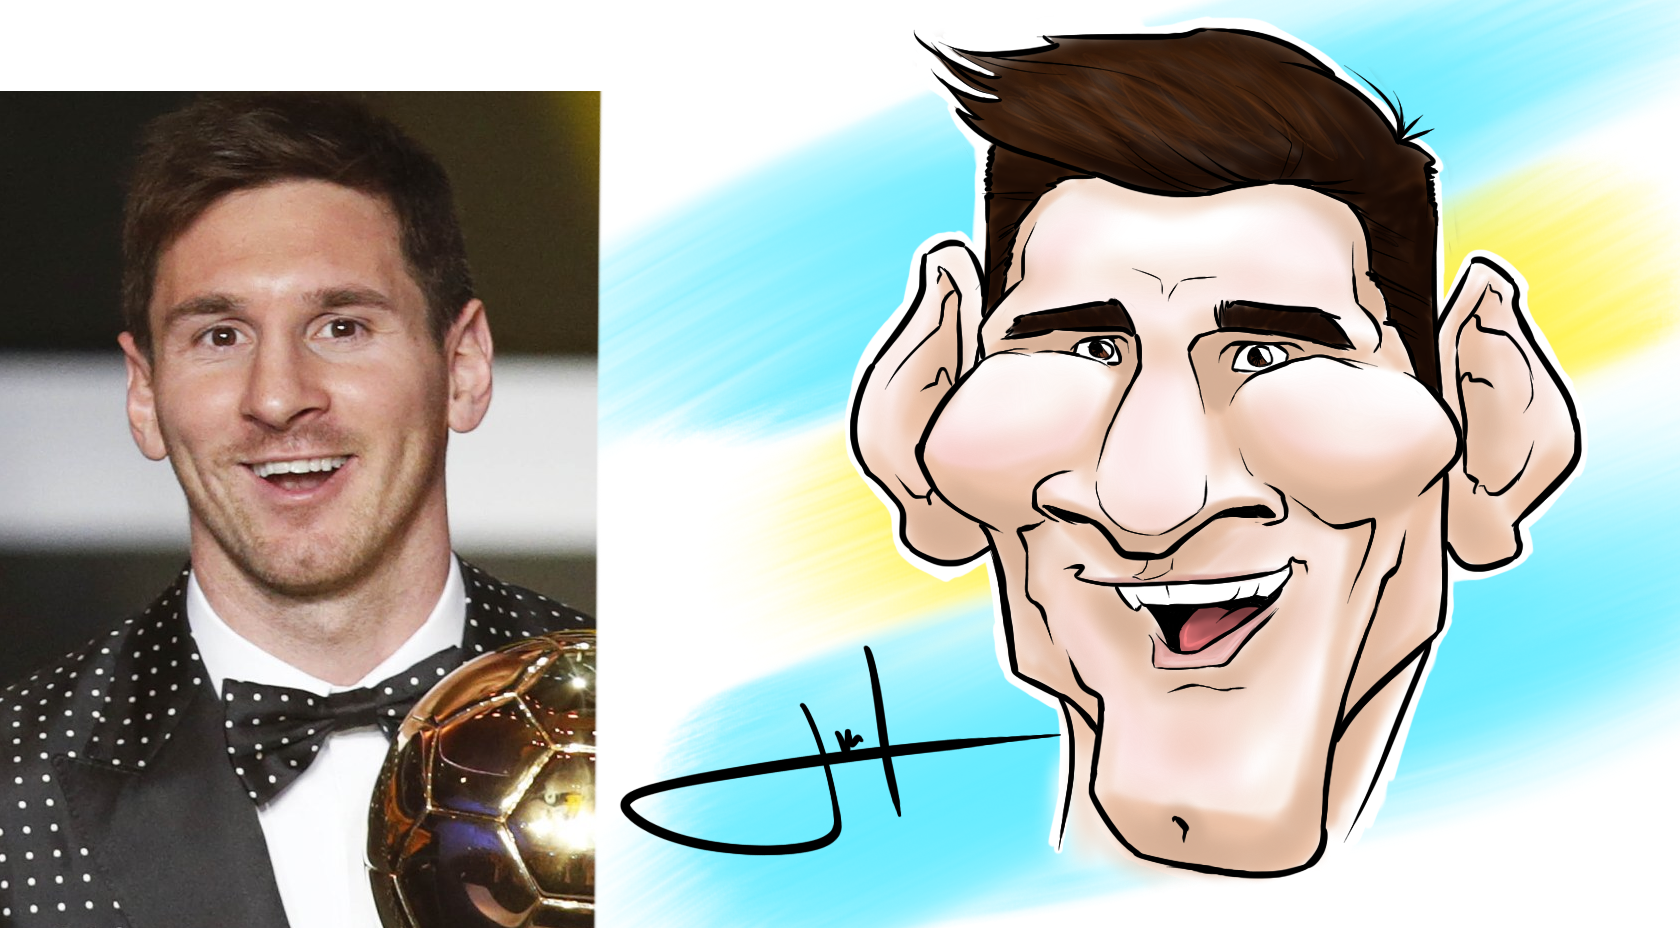 Leo Messi Caricature by daddyX91 on DeviantArt